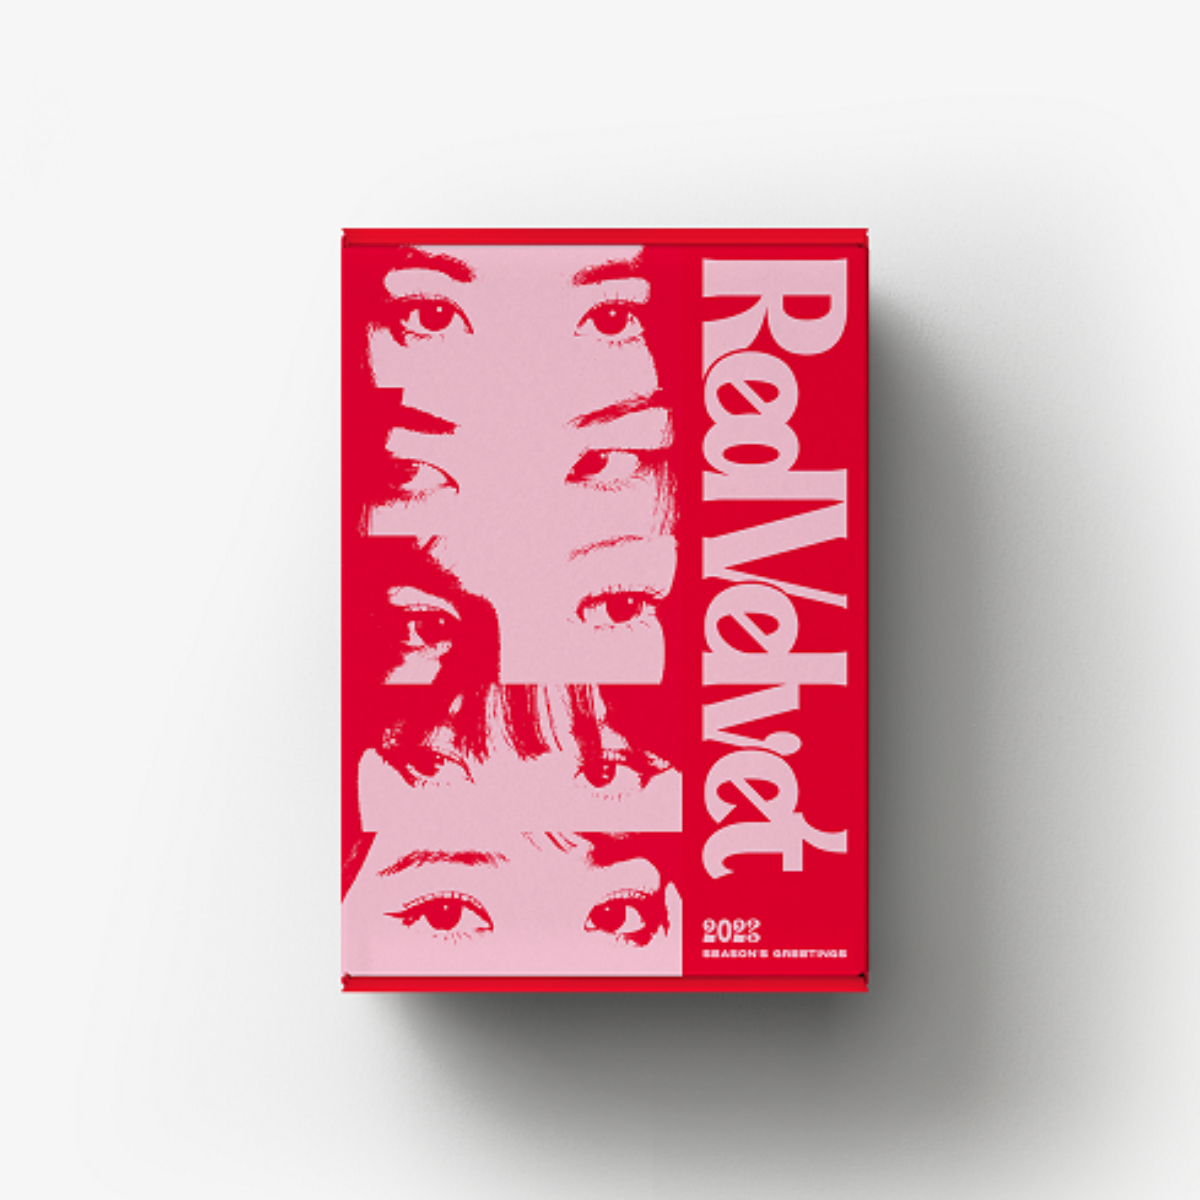 Red Velvet - 2023 SEASON'S GREETINGS